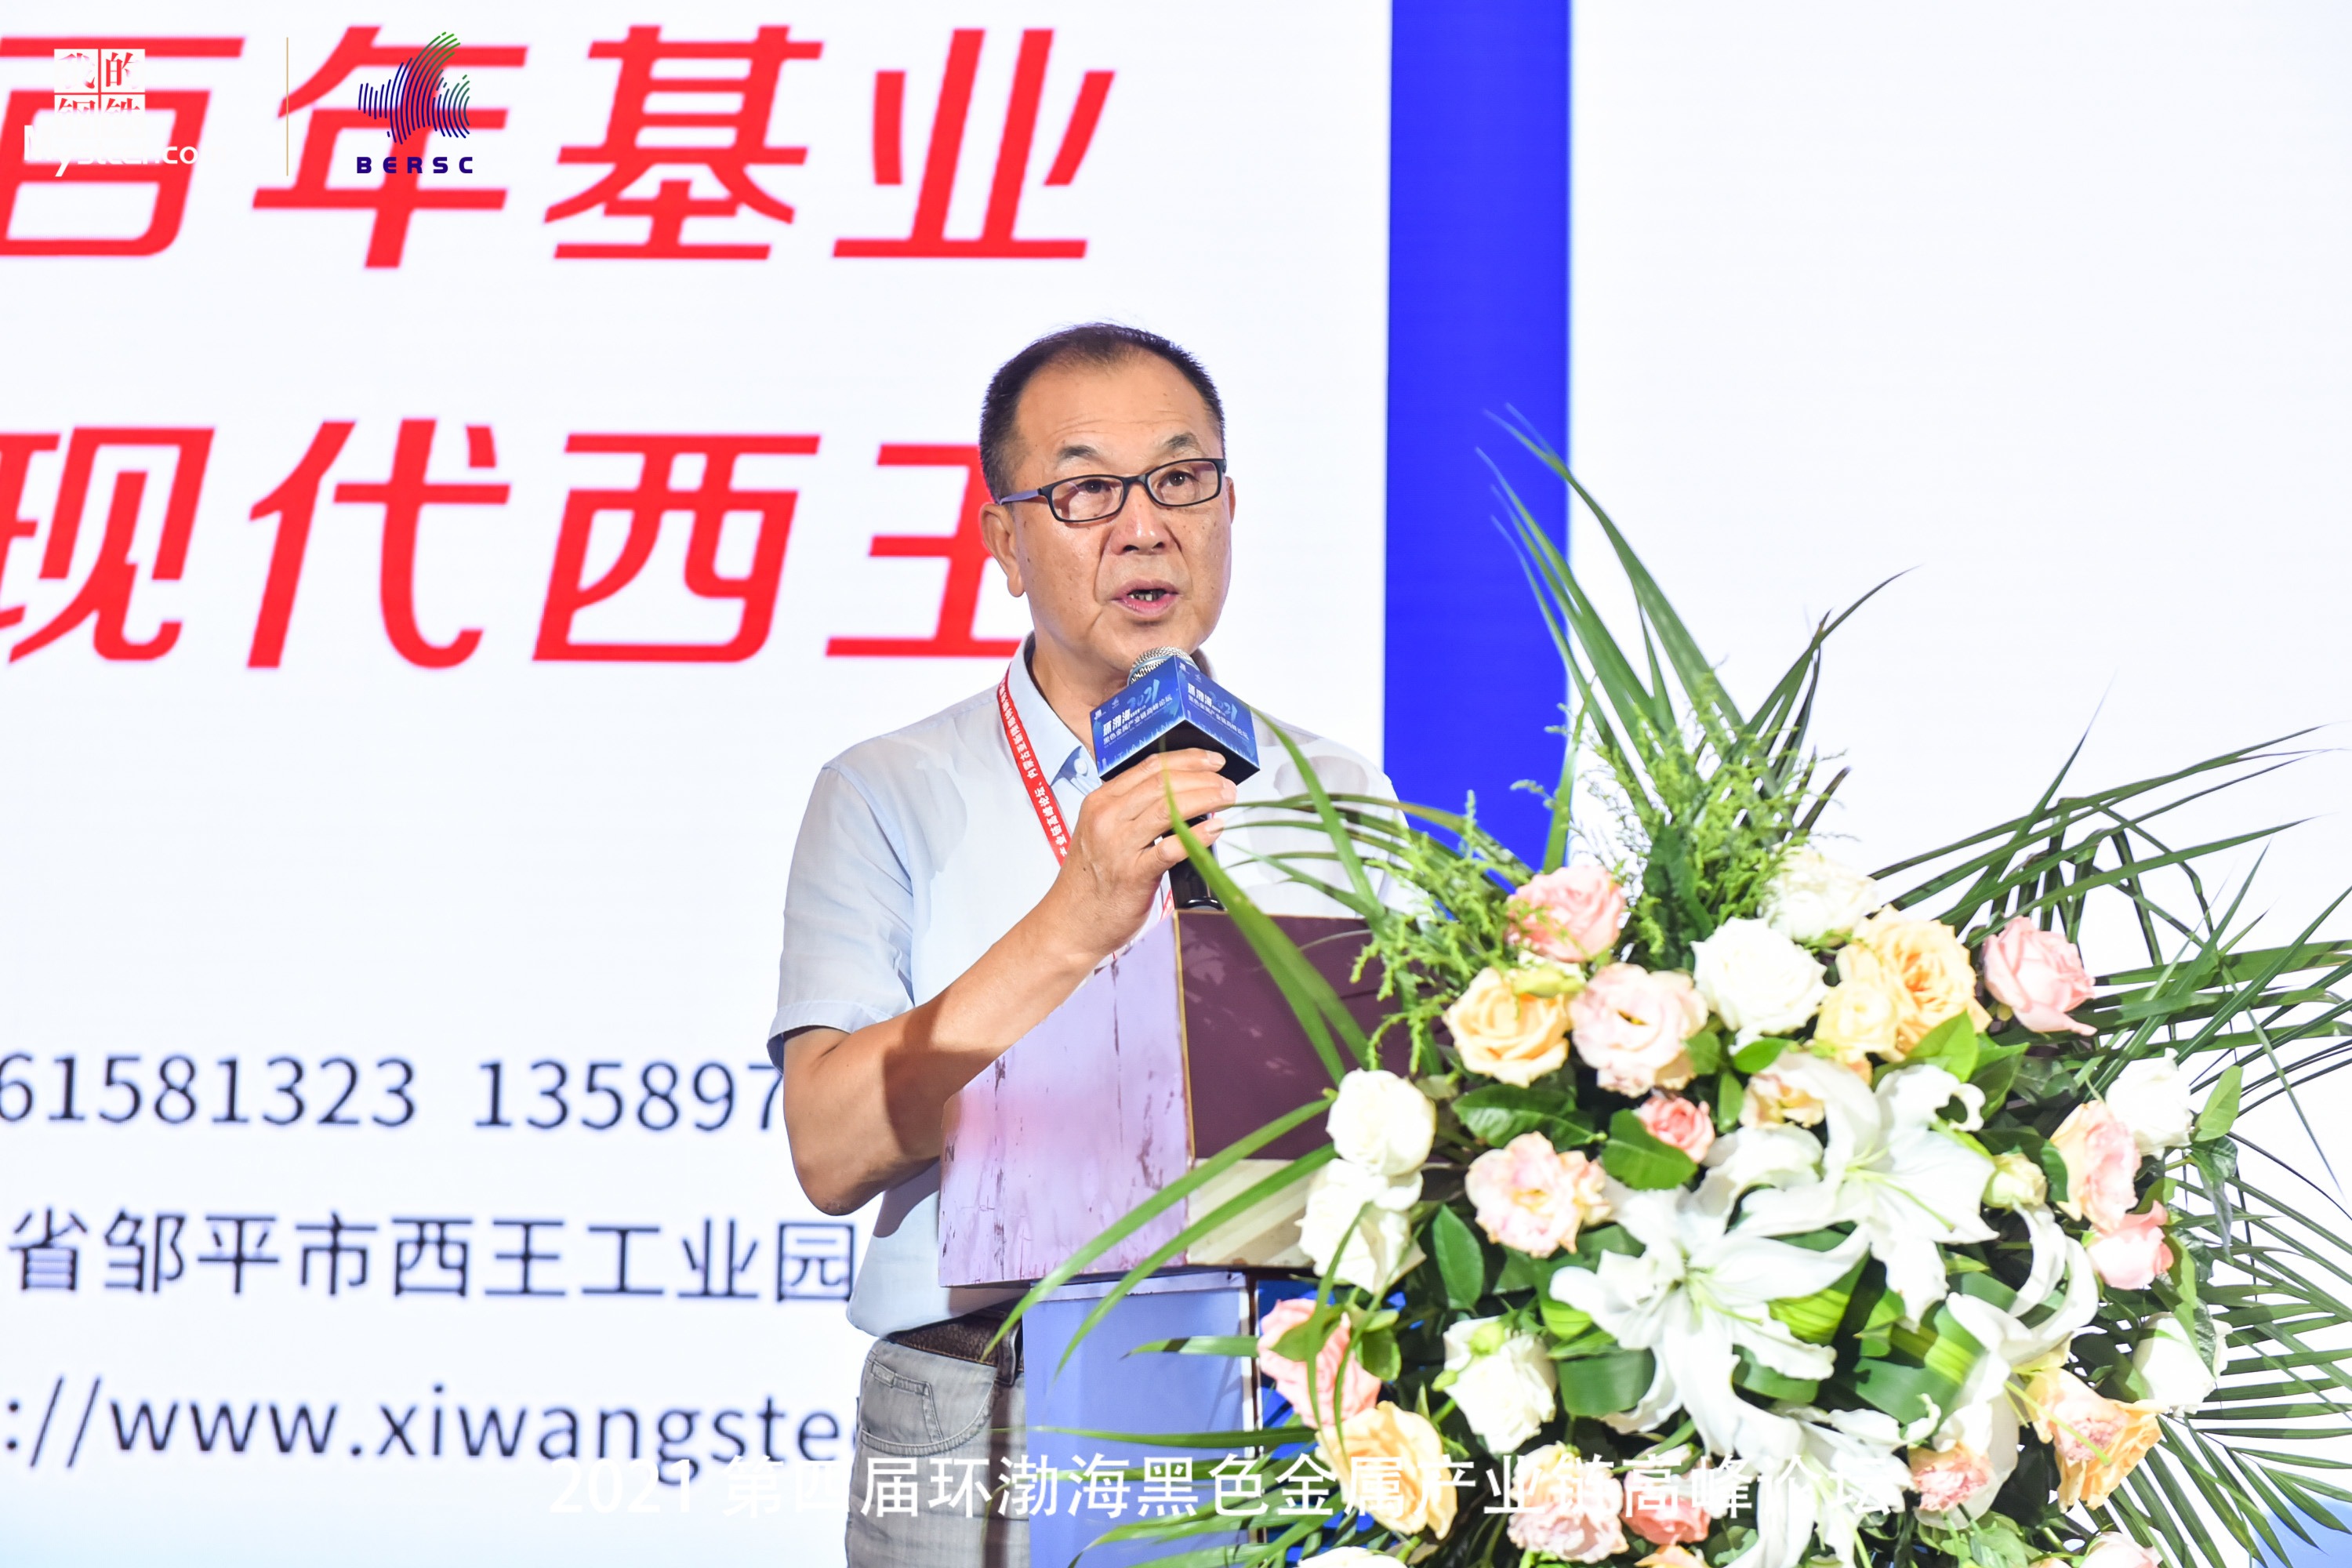 马树臣：2021年天津市金属材料行业协会将服务宗旨定为务实务实再务实